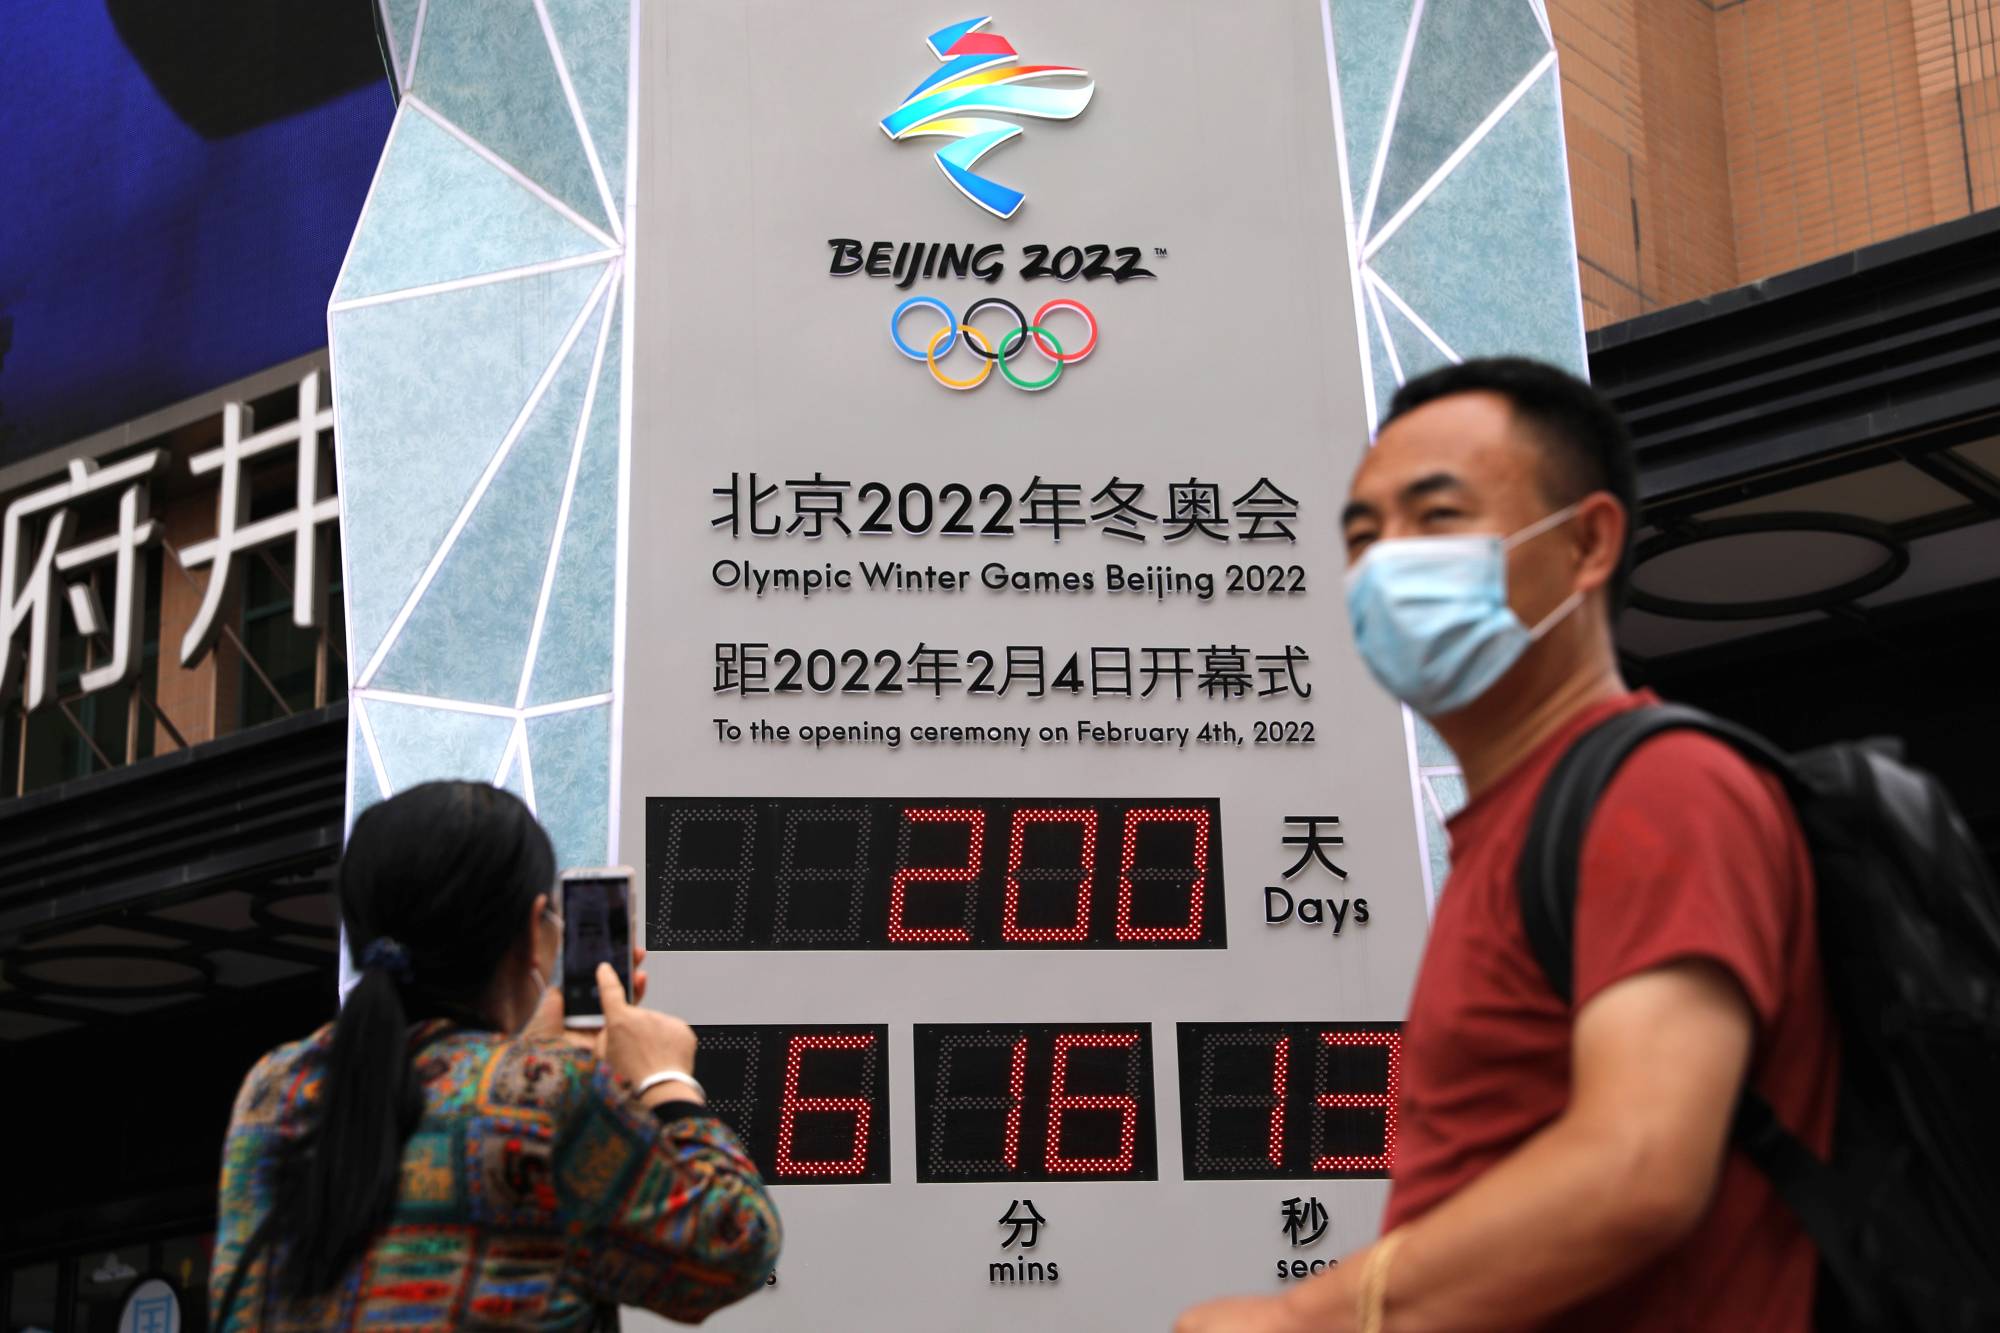 2022 Beijing Olympic Winter Games